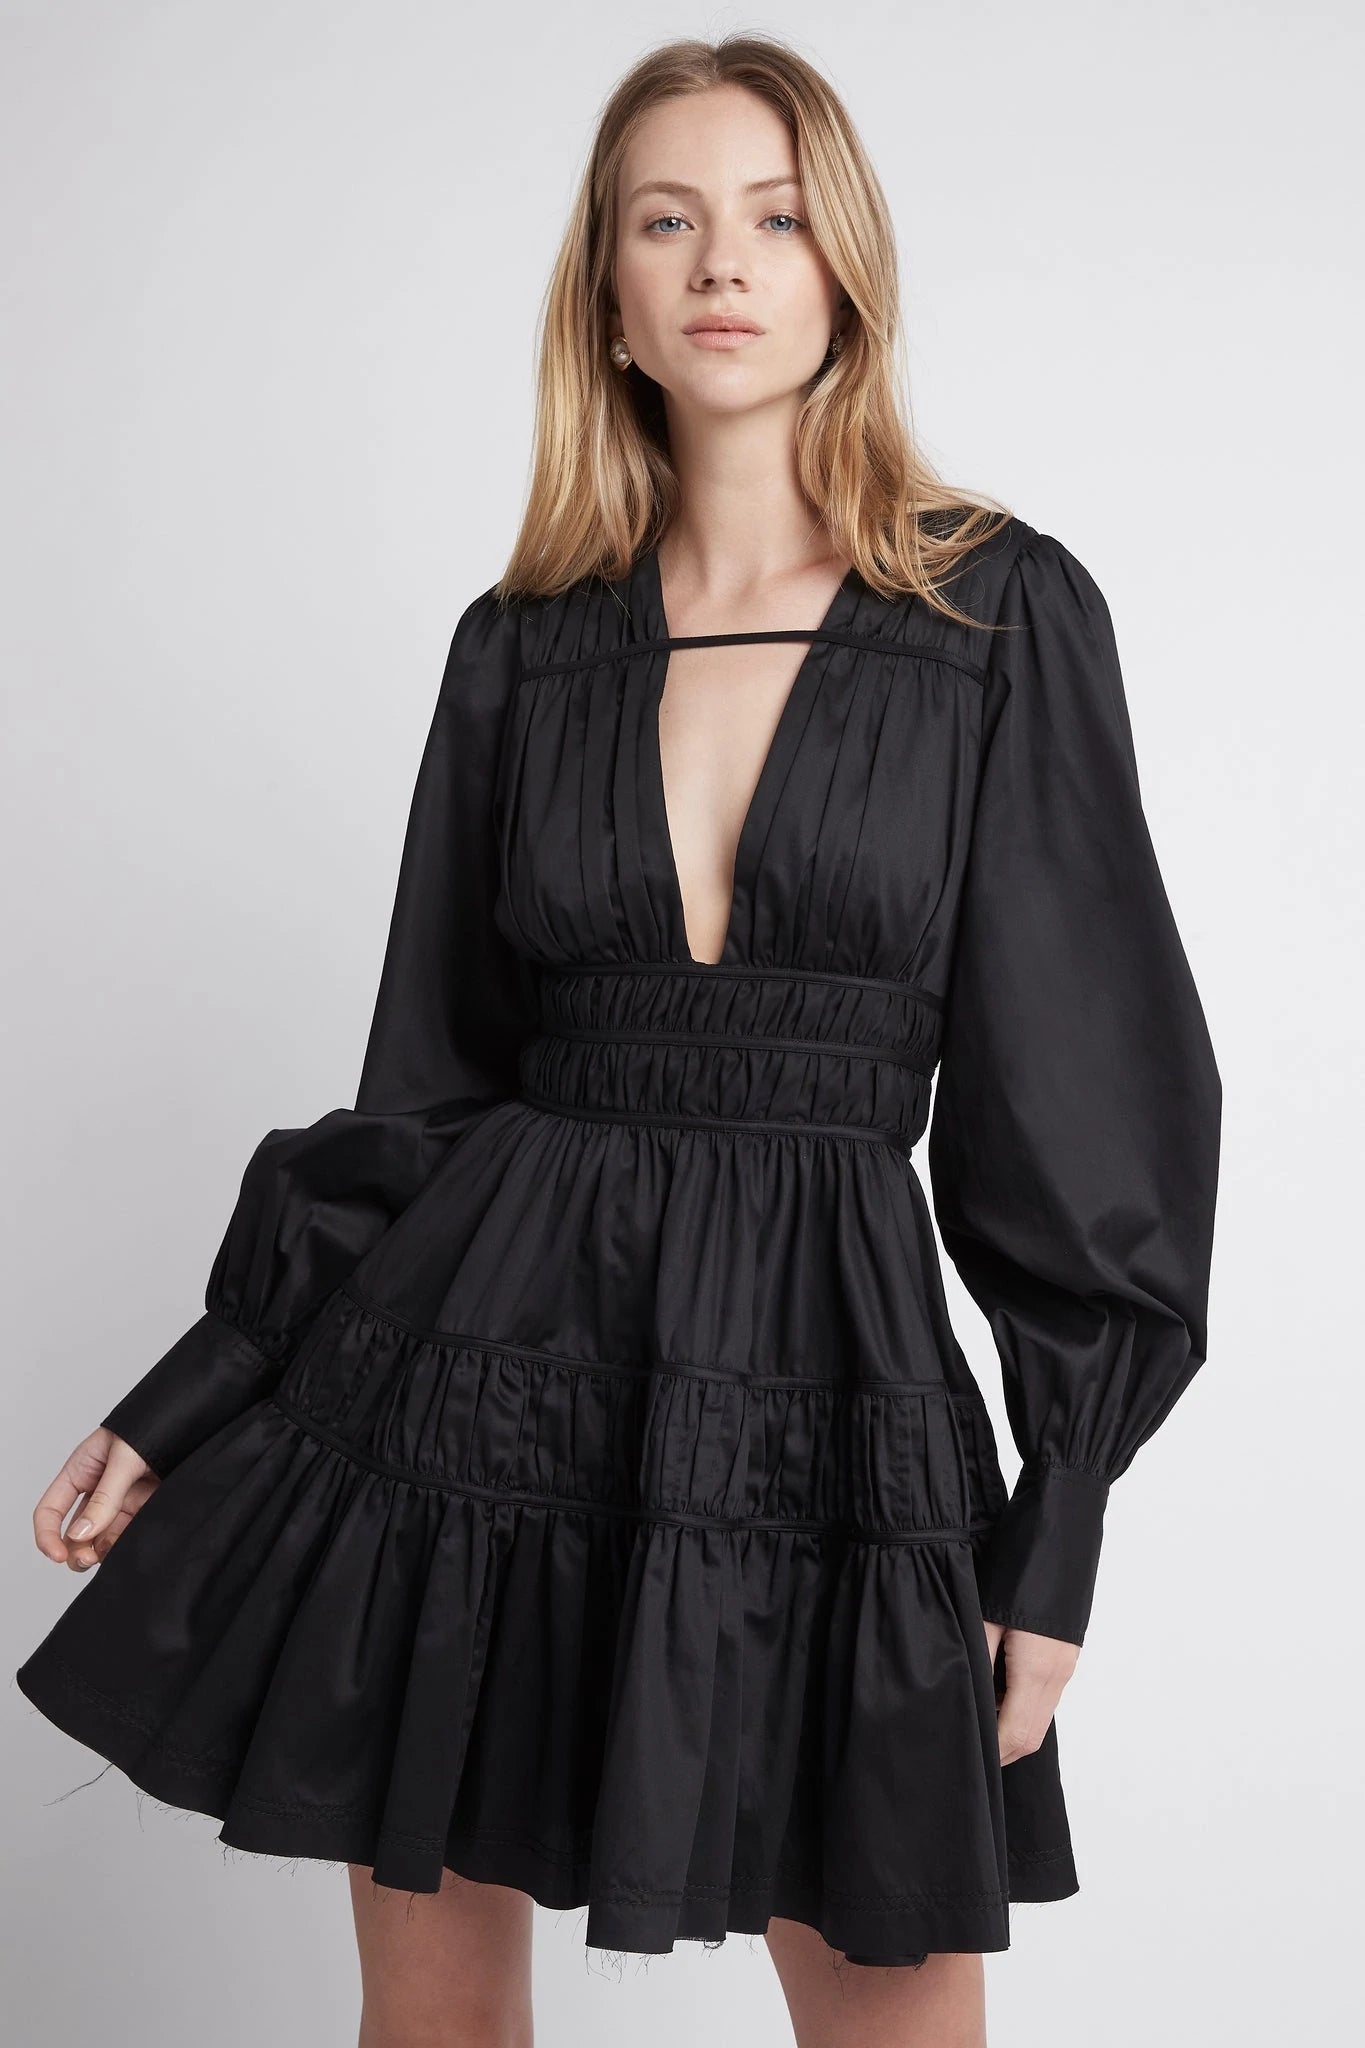 Fallingwater gather mini dress in black – Dress to Impress Rentals